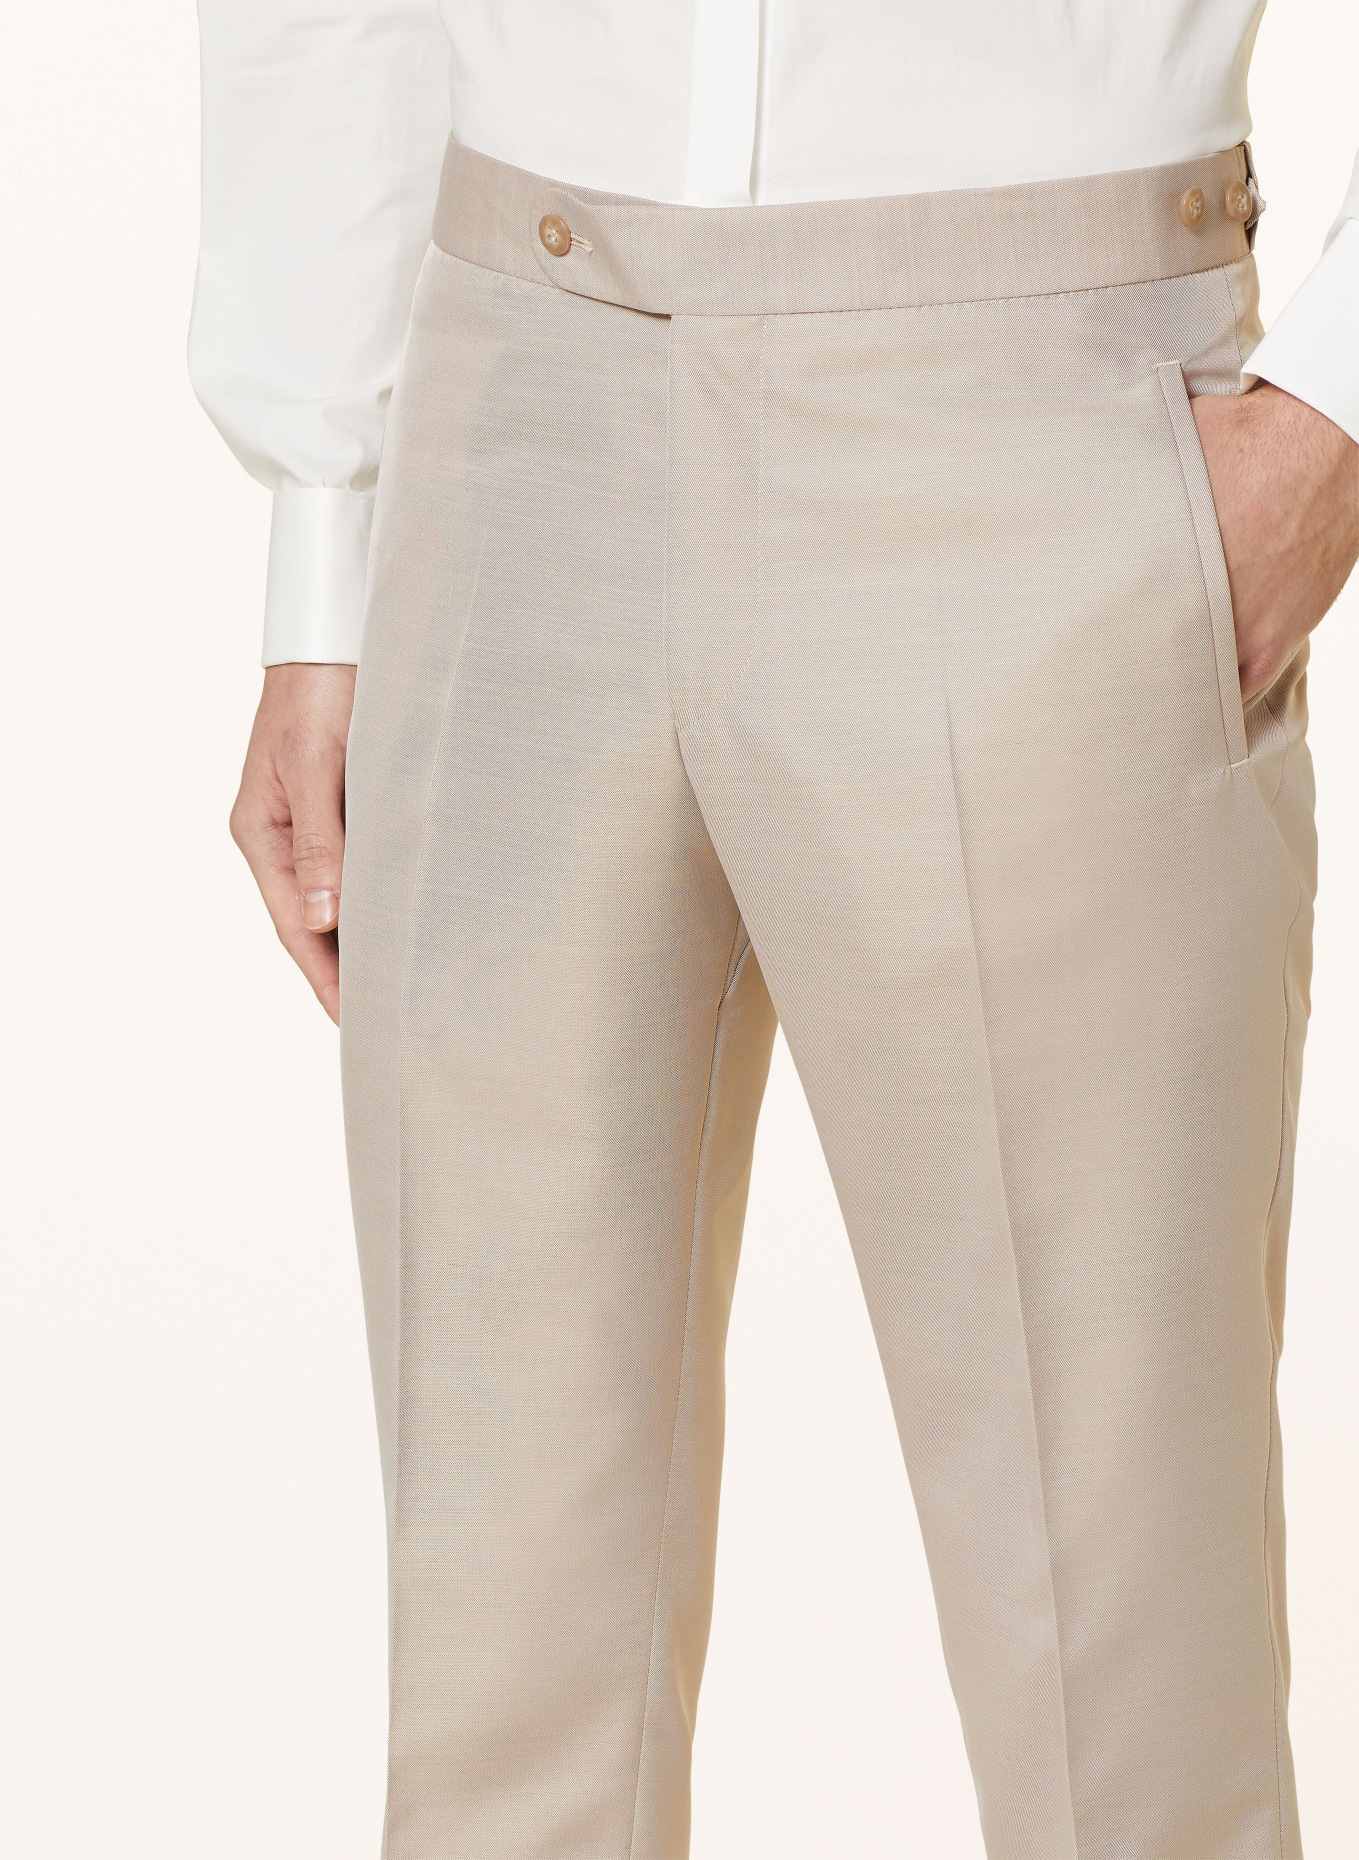 WILVORST Anzughose Extra Slim Fit, Farbe: 083 Beige (Bild 6)